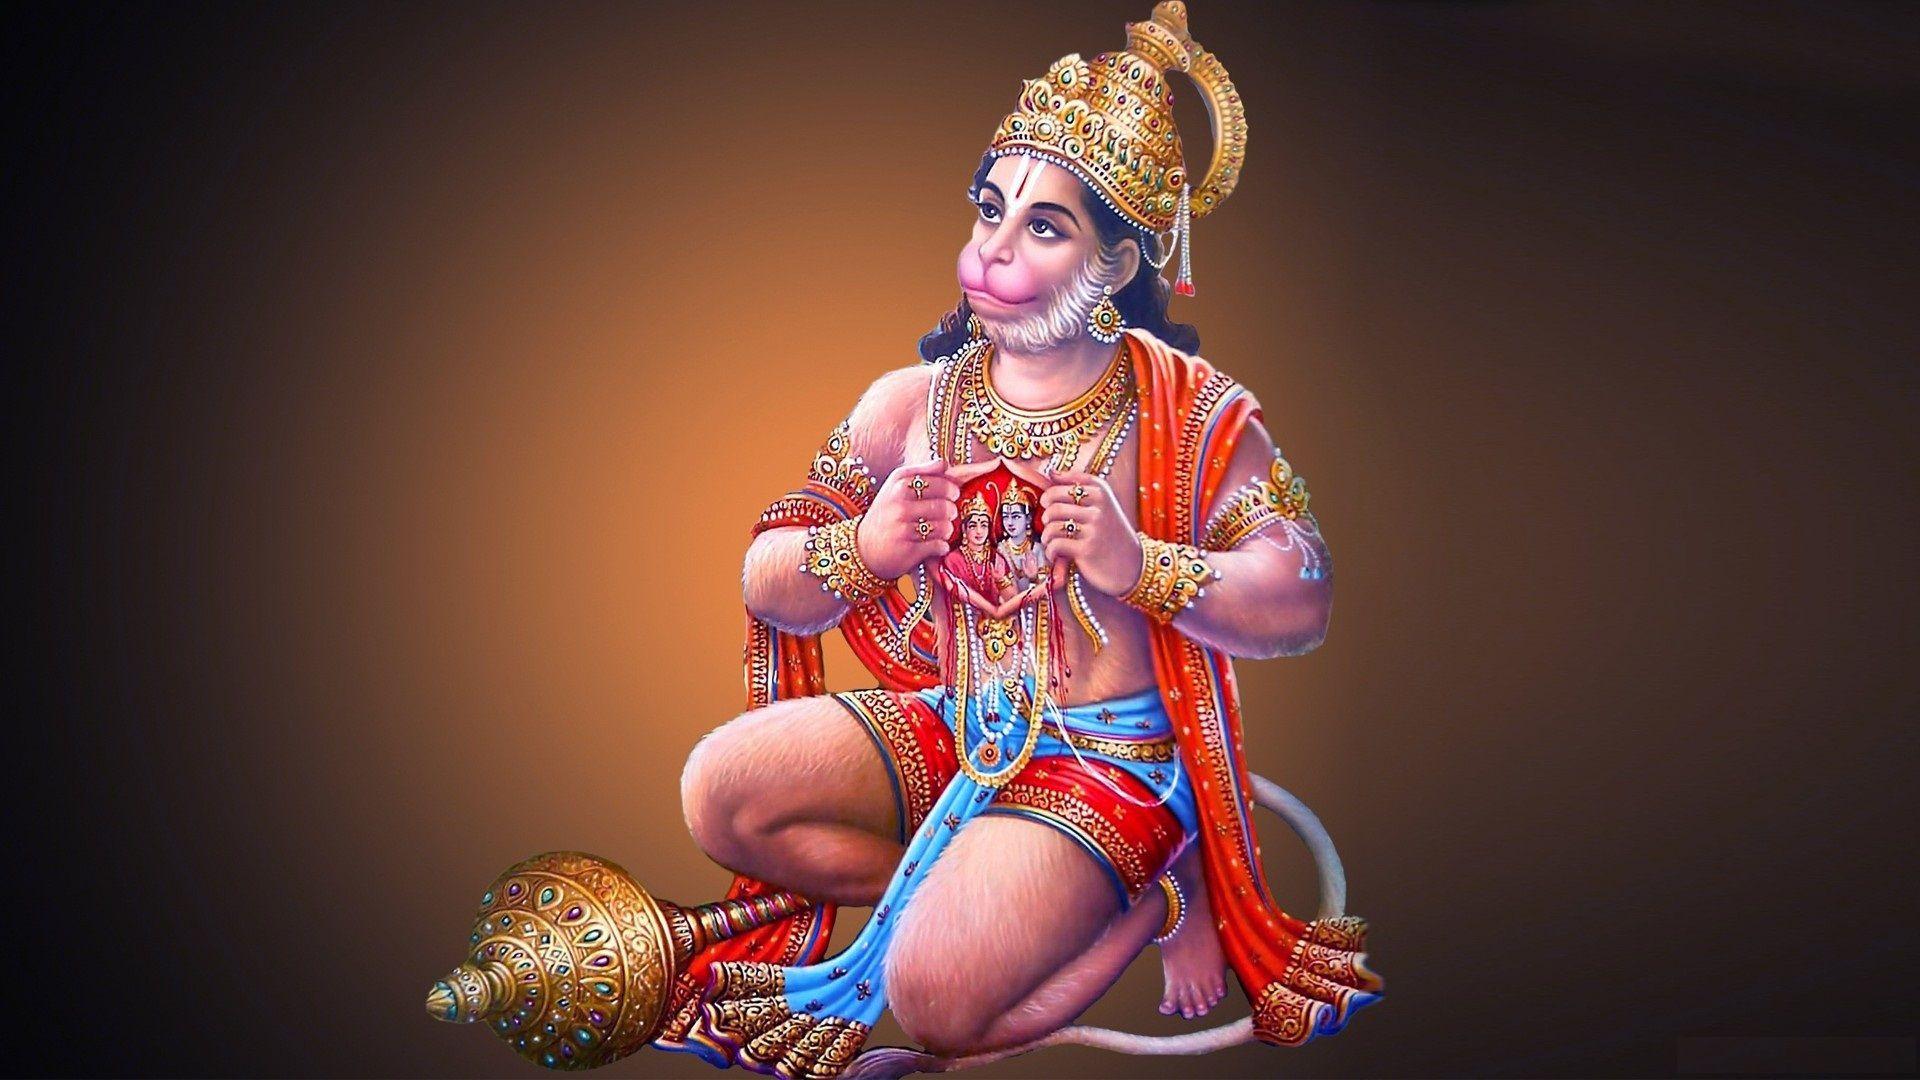 Lord Hanuman Full HD 1080p Wallpaper Free Image Download